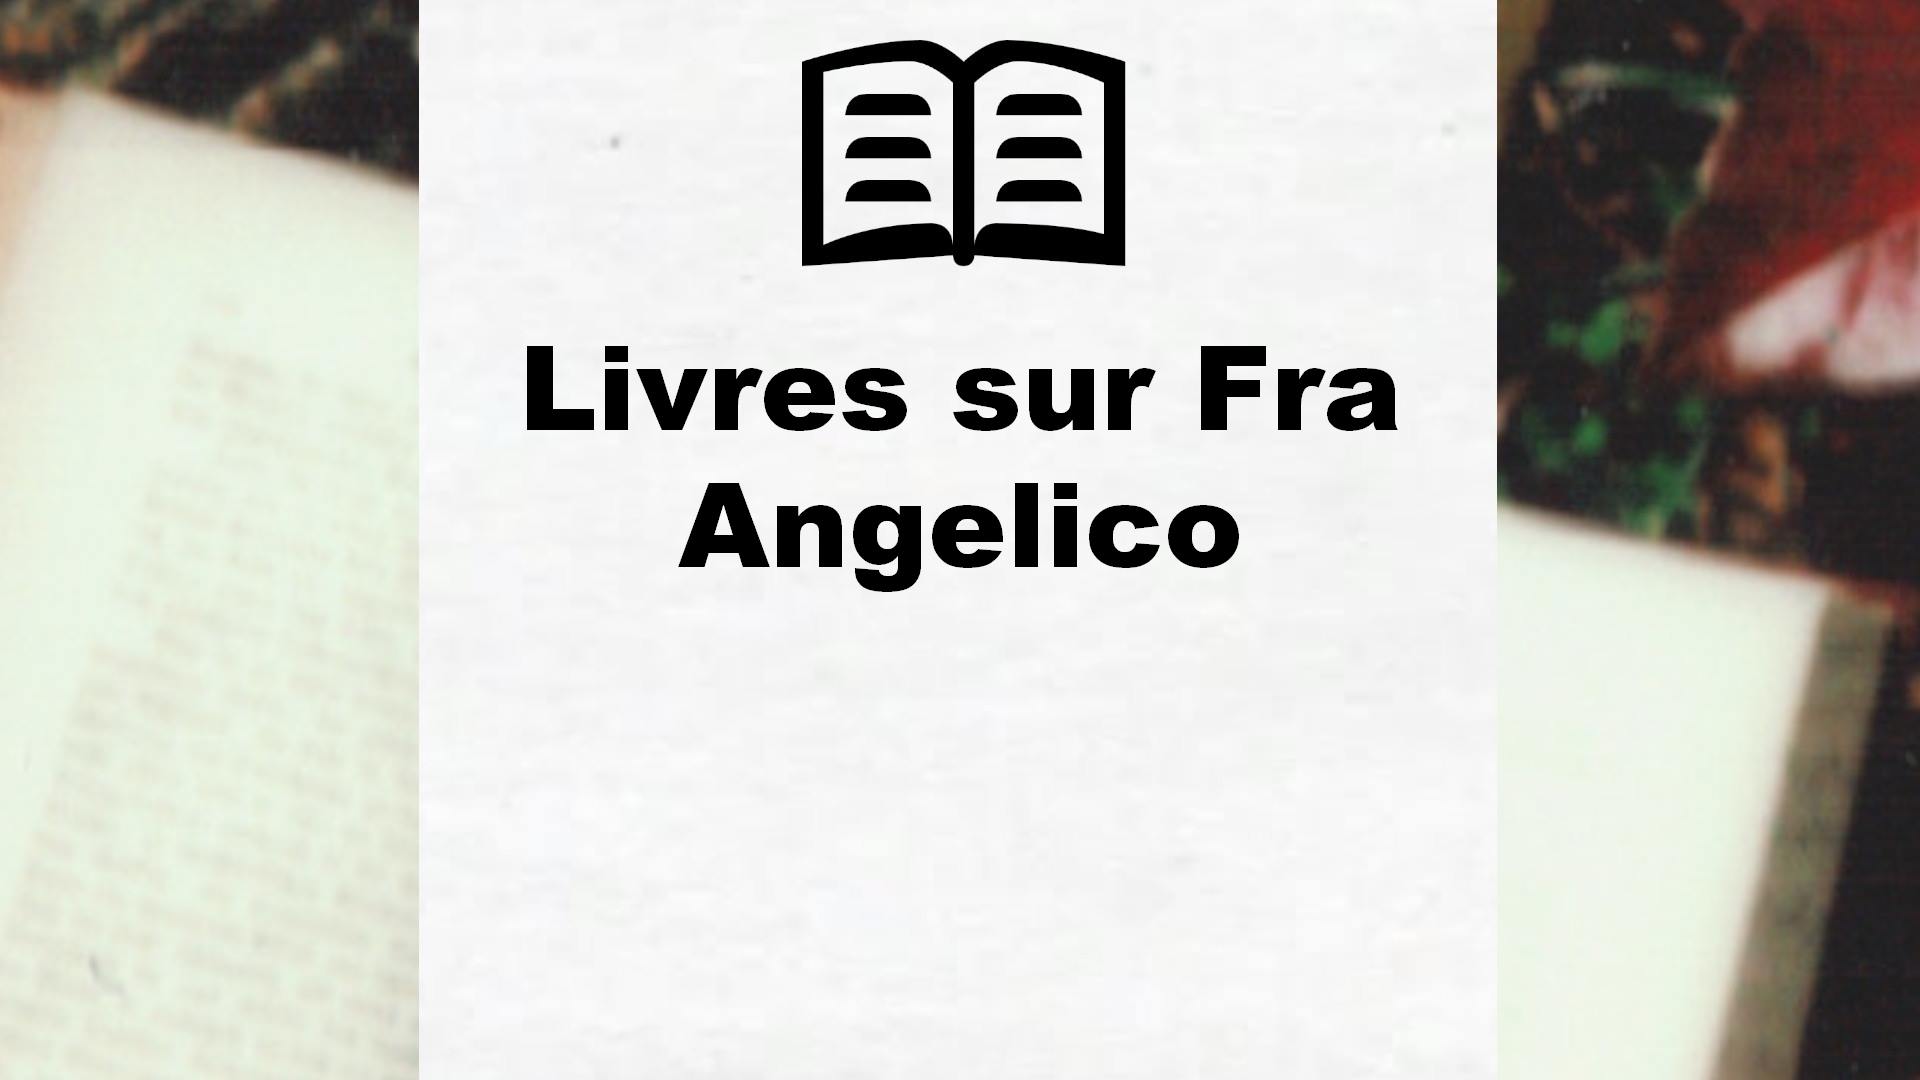 Livres sur Fra Angelico